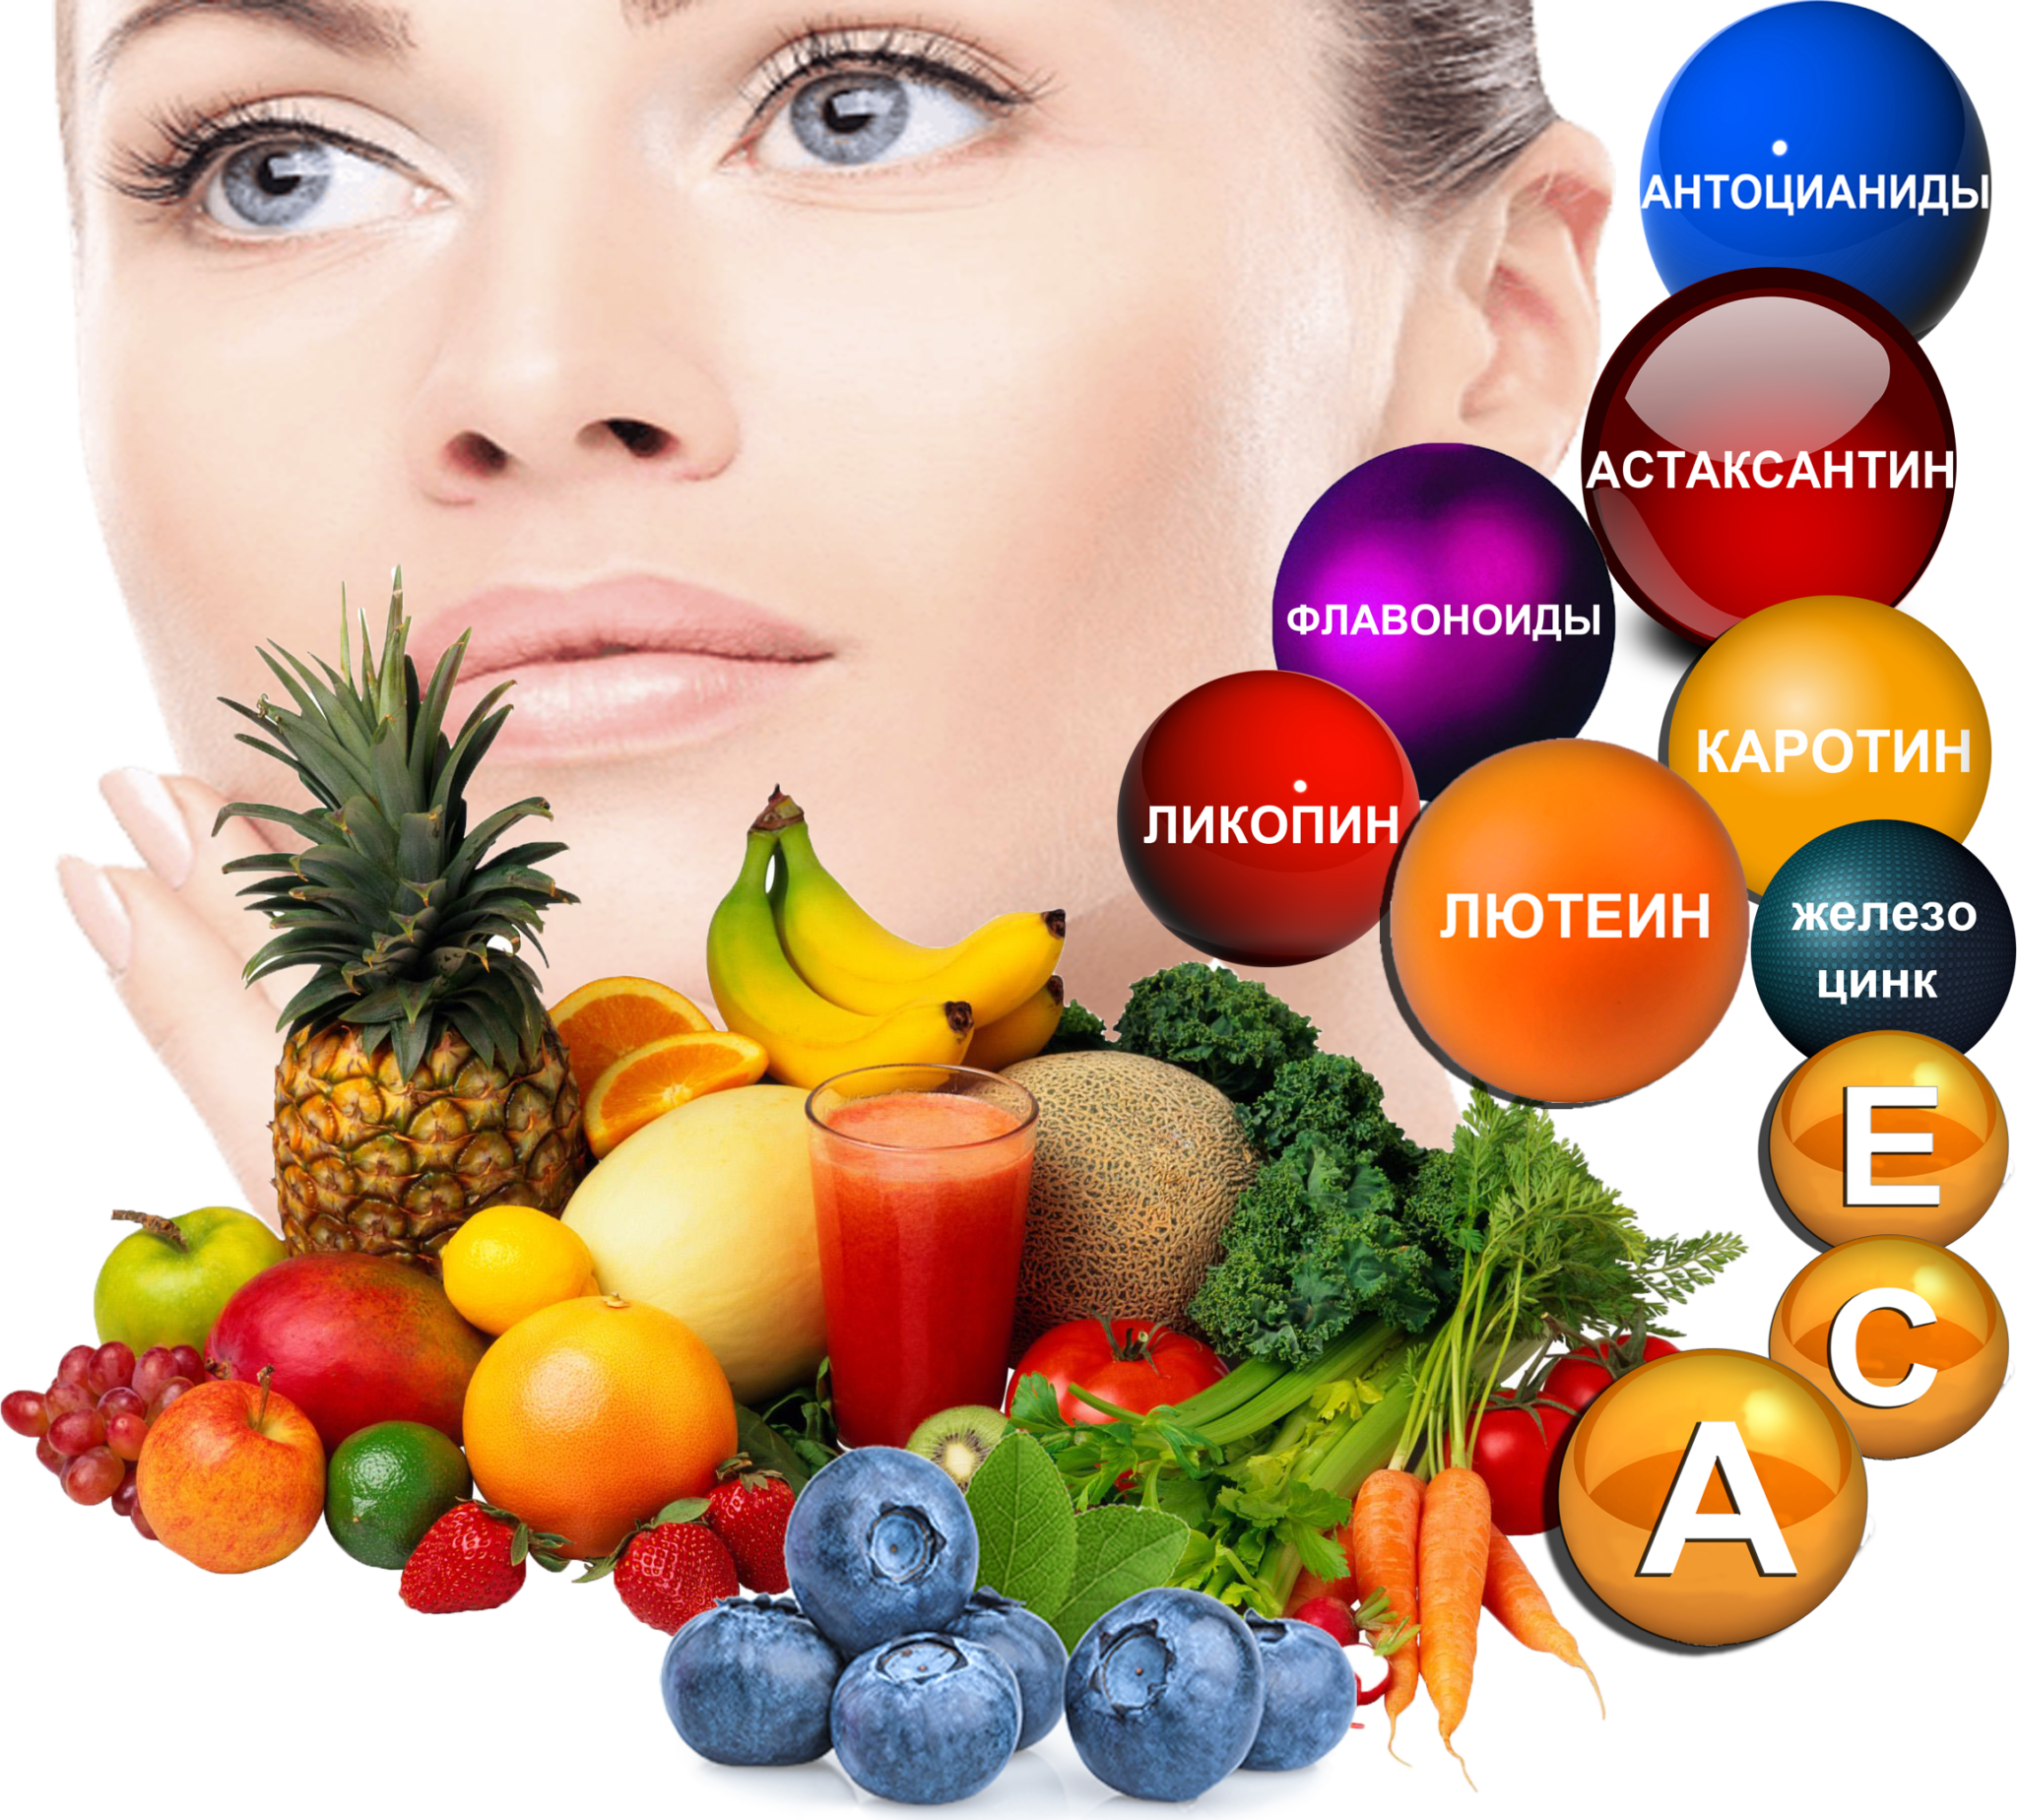 Какие витамины хорошие для лица. Витамины для глаз. Витамины улучшающие зрение. Витамины для глаз натуральные. Витамины полезные для глаз.